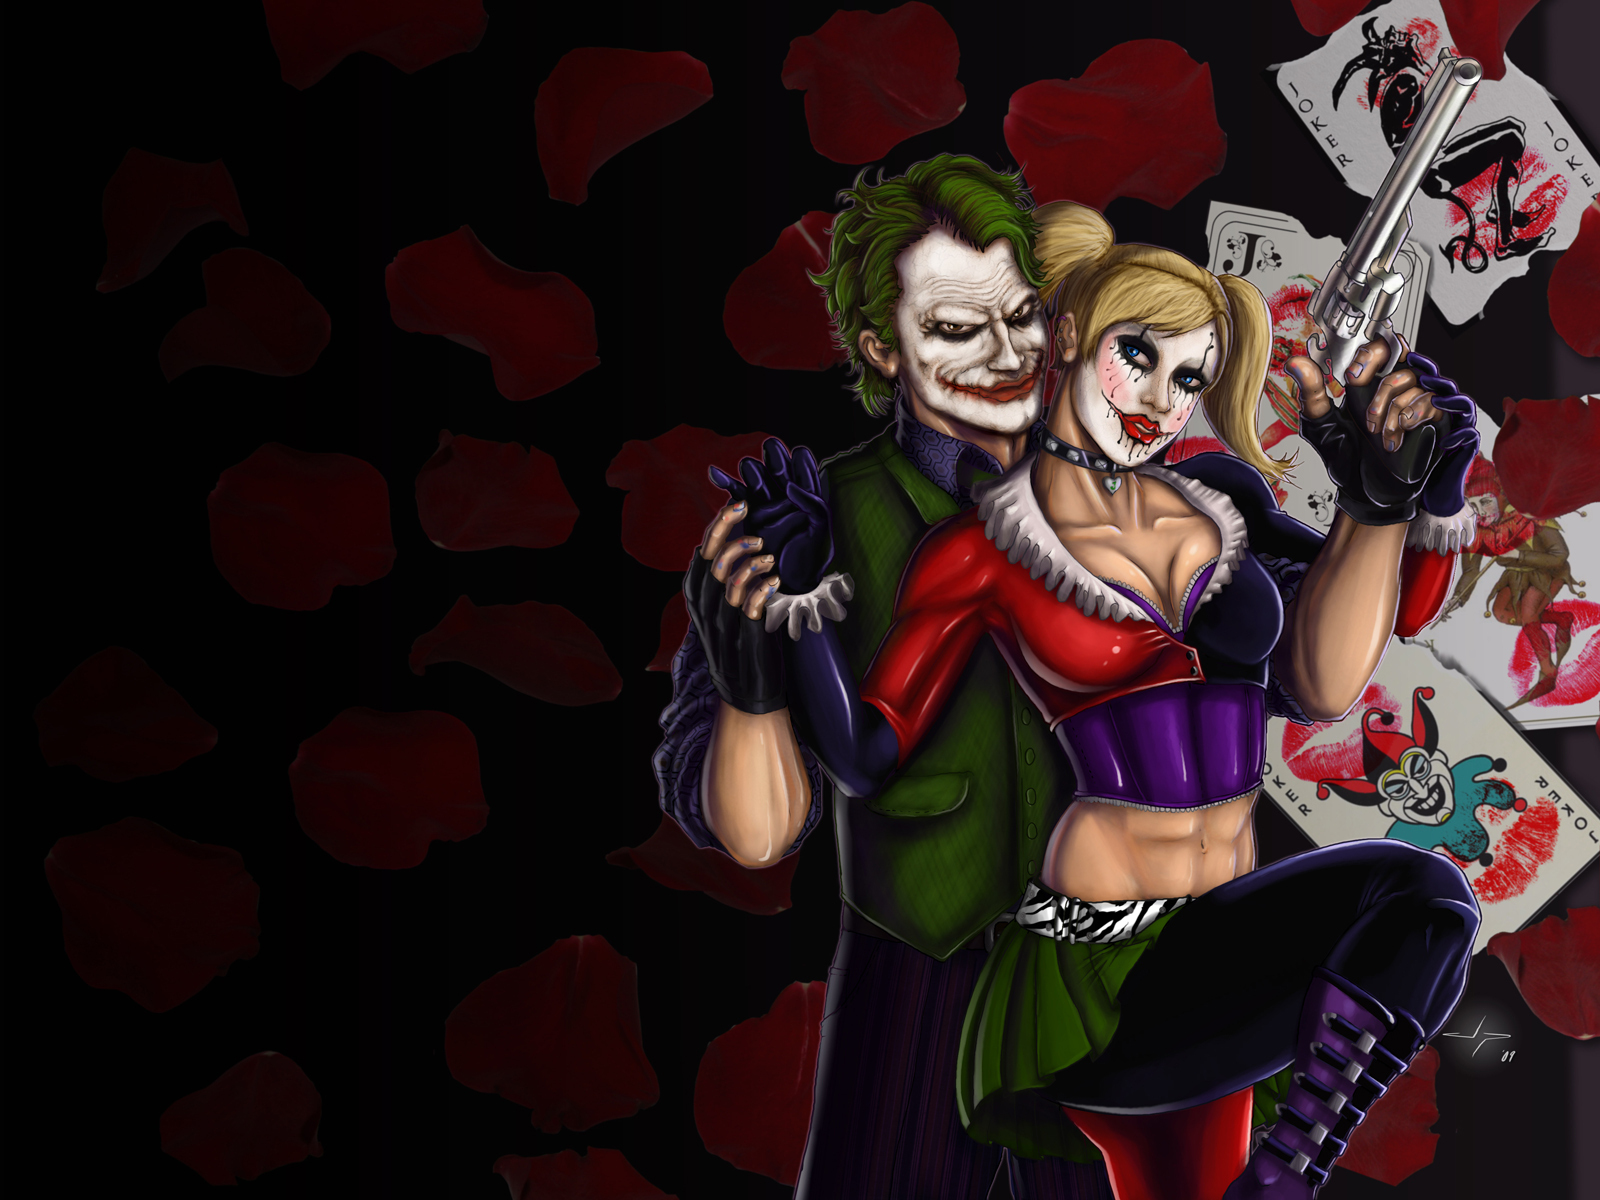 Joker The Wallpaper